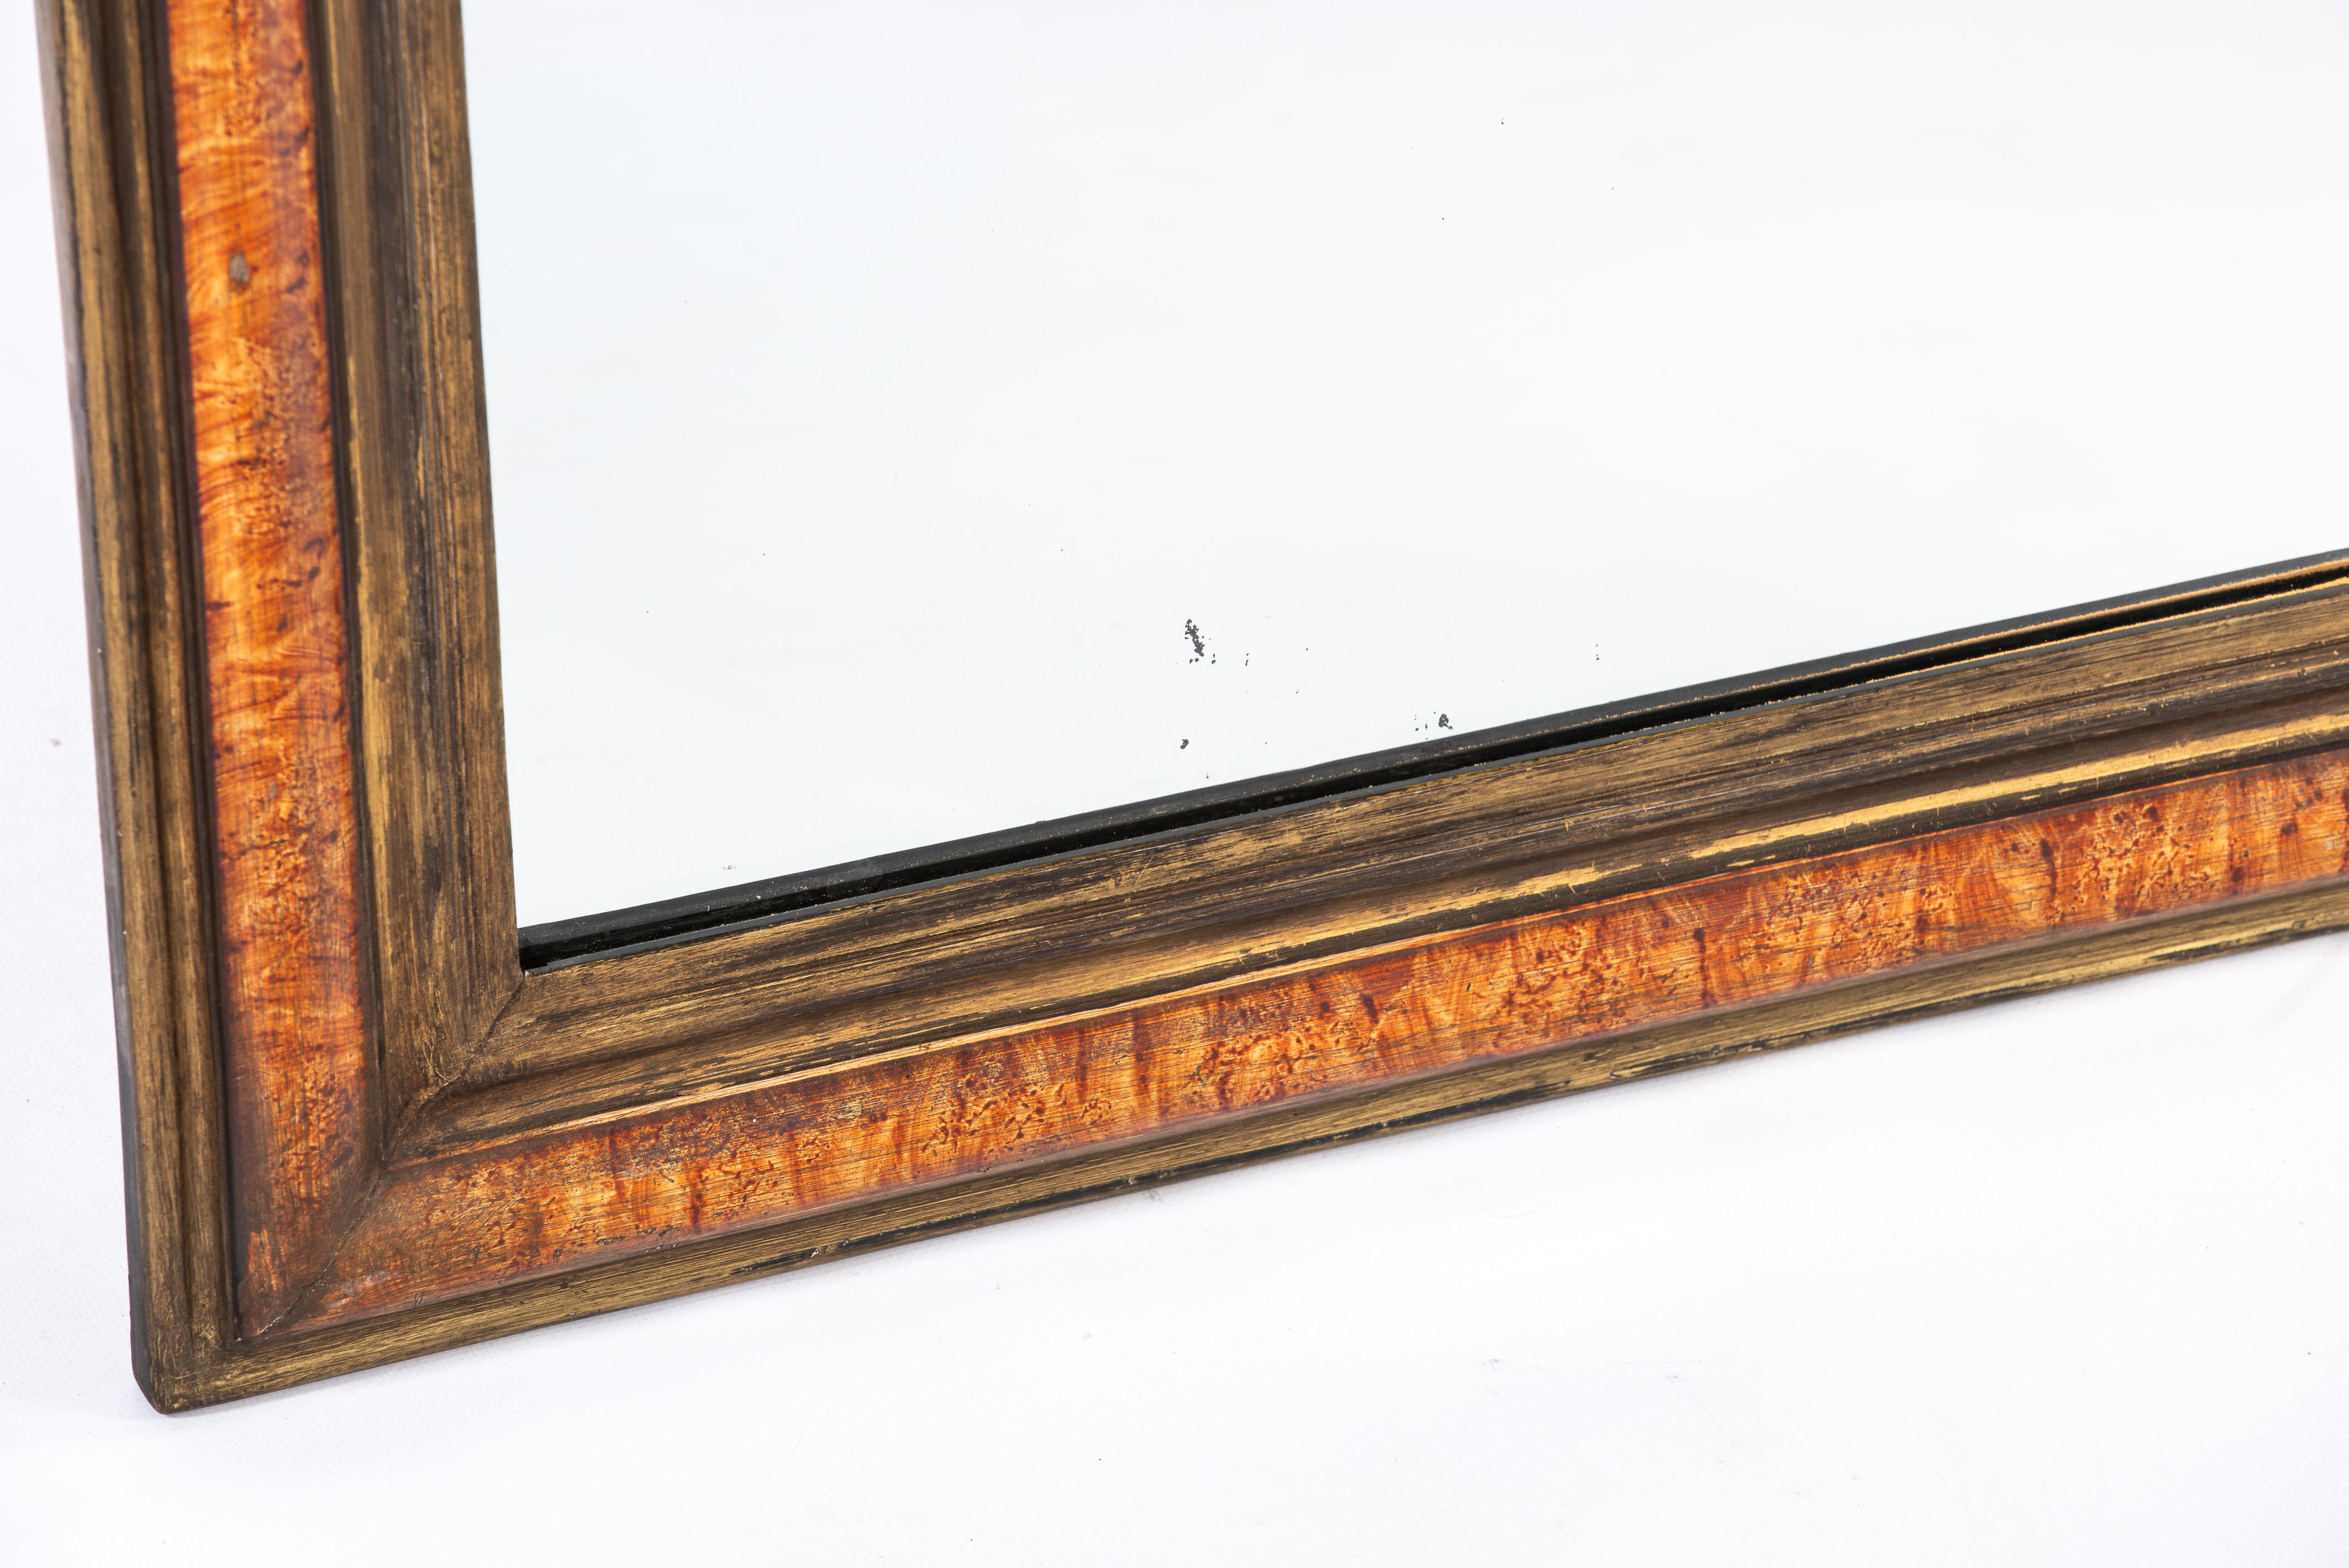 Nous vous proposons ici un magnifique miroir Louis Philippe, fabriqué dans le nord de la France à la fin des années 1800. Le miroir a un cadre en pin massif qui a été lissé avec du gesso. Le cadre du miroir est peint pour ressembler à l'essence de